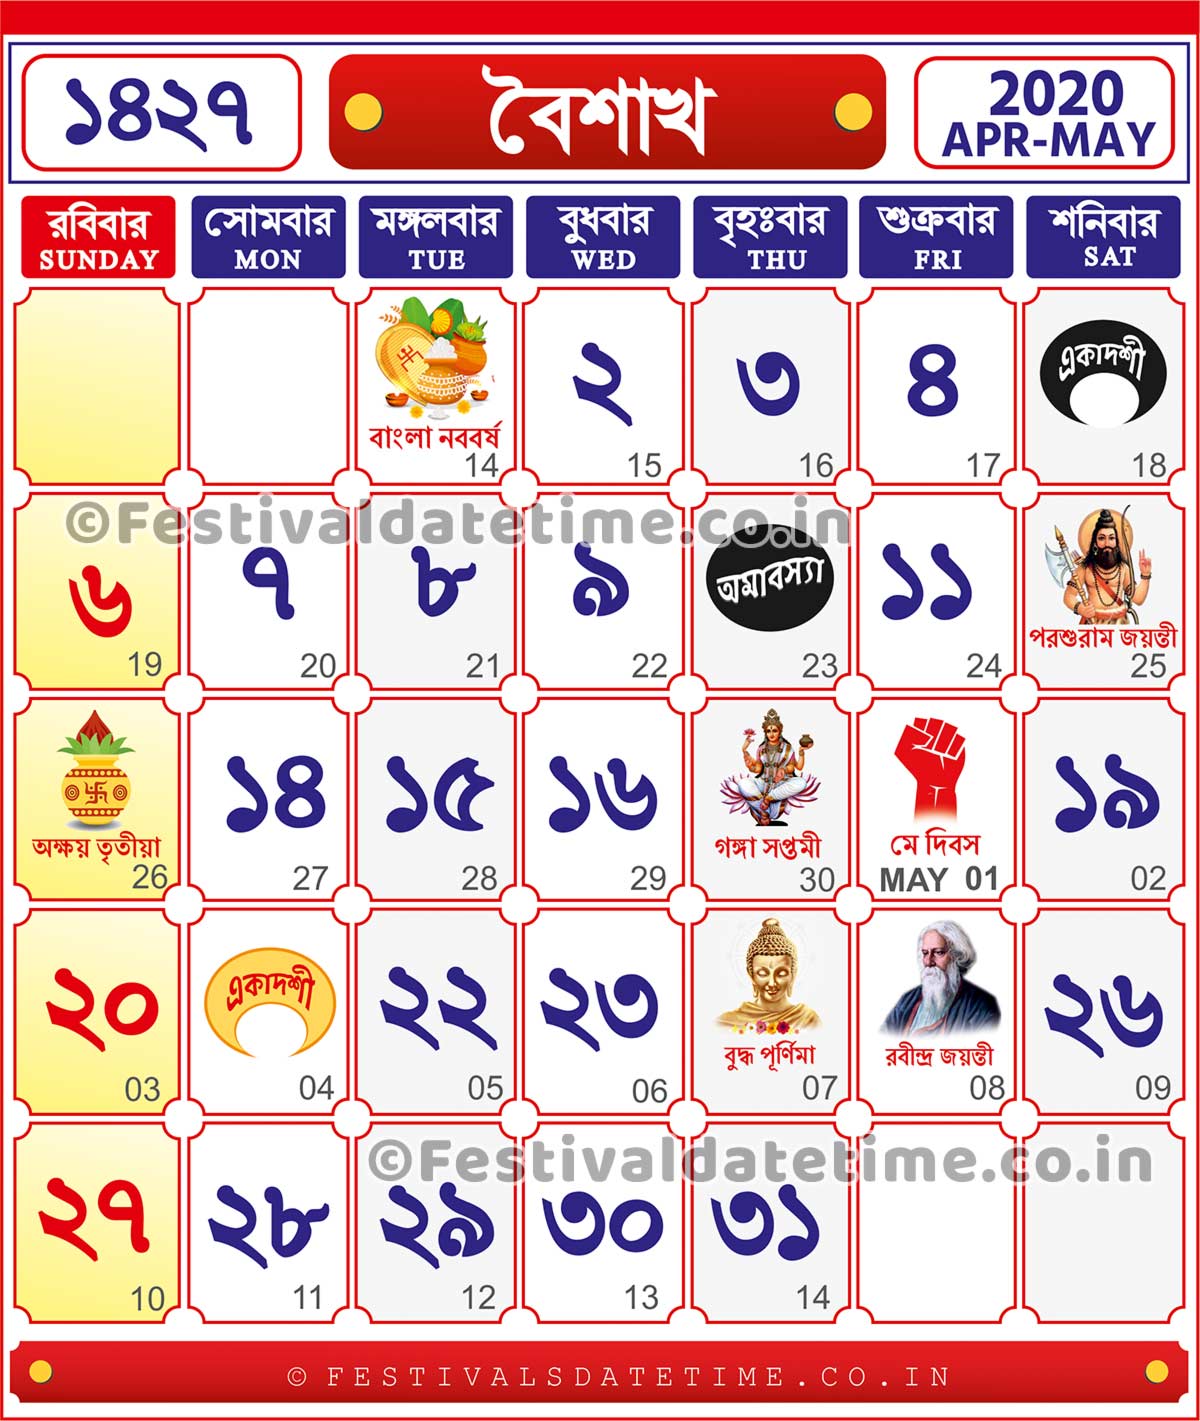 2021 calendar with bengali date 1427 Bengali Calendar Baisakh 1427 2020 2021 Bengali Calendar Download Bengali Calendar 1427 Festivals Date Time 2021 calendar with bengali date